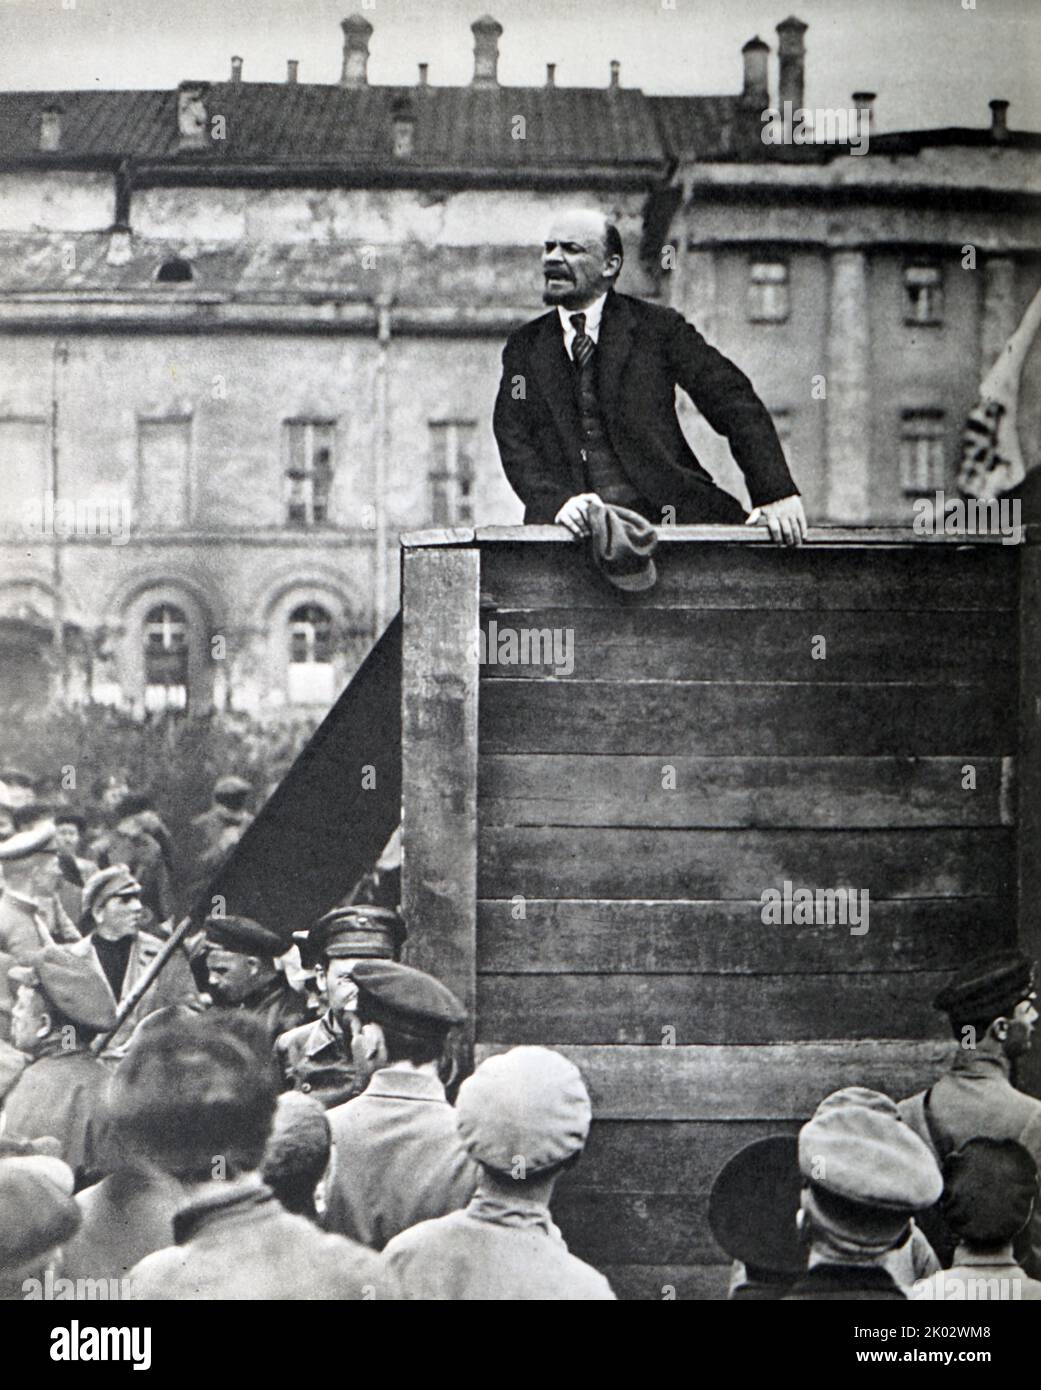 Vladimir Lénine prononce un discours sur la place Sverdlov devant les troupes partant pour le front polonais. Moscou, 5 mai 1920. Photo de G. Goldstein. Banque D'Images